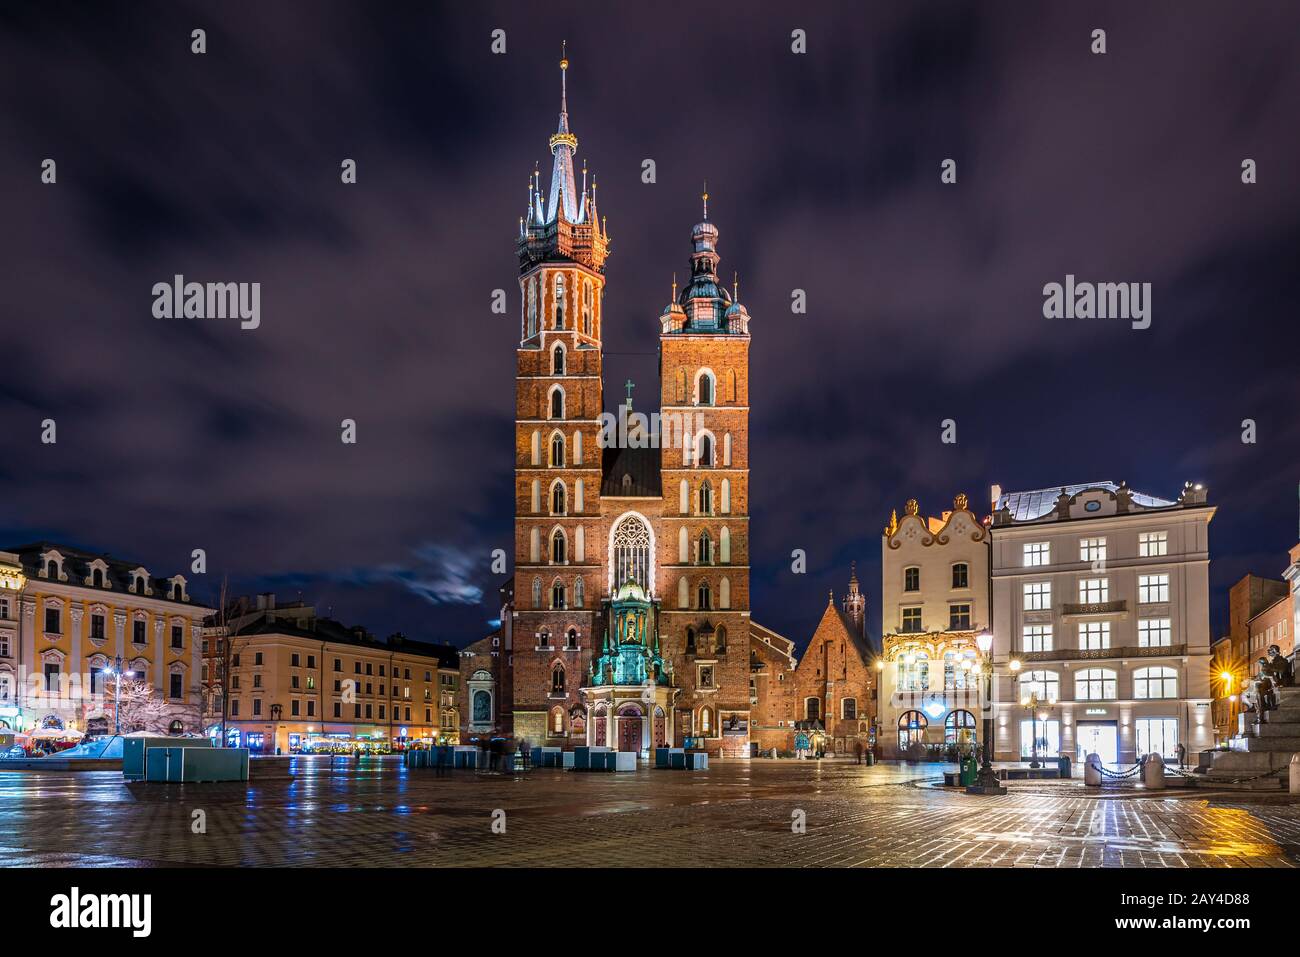 Krakow market square with St Mary's Basilica at night, Krakow, Poland Stock Photo